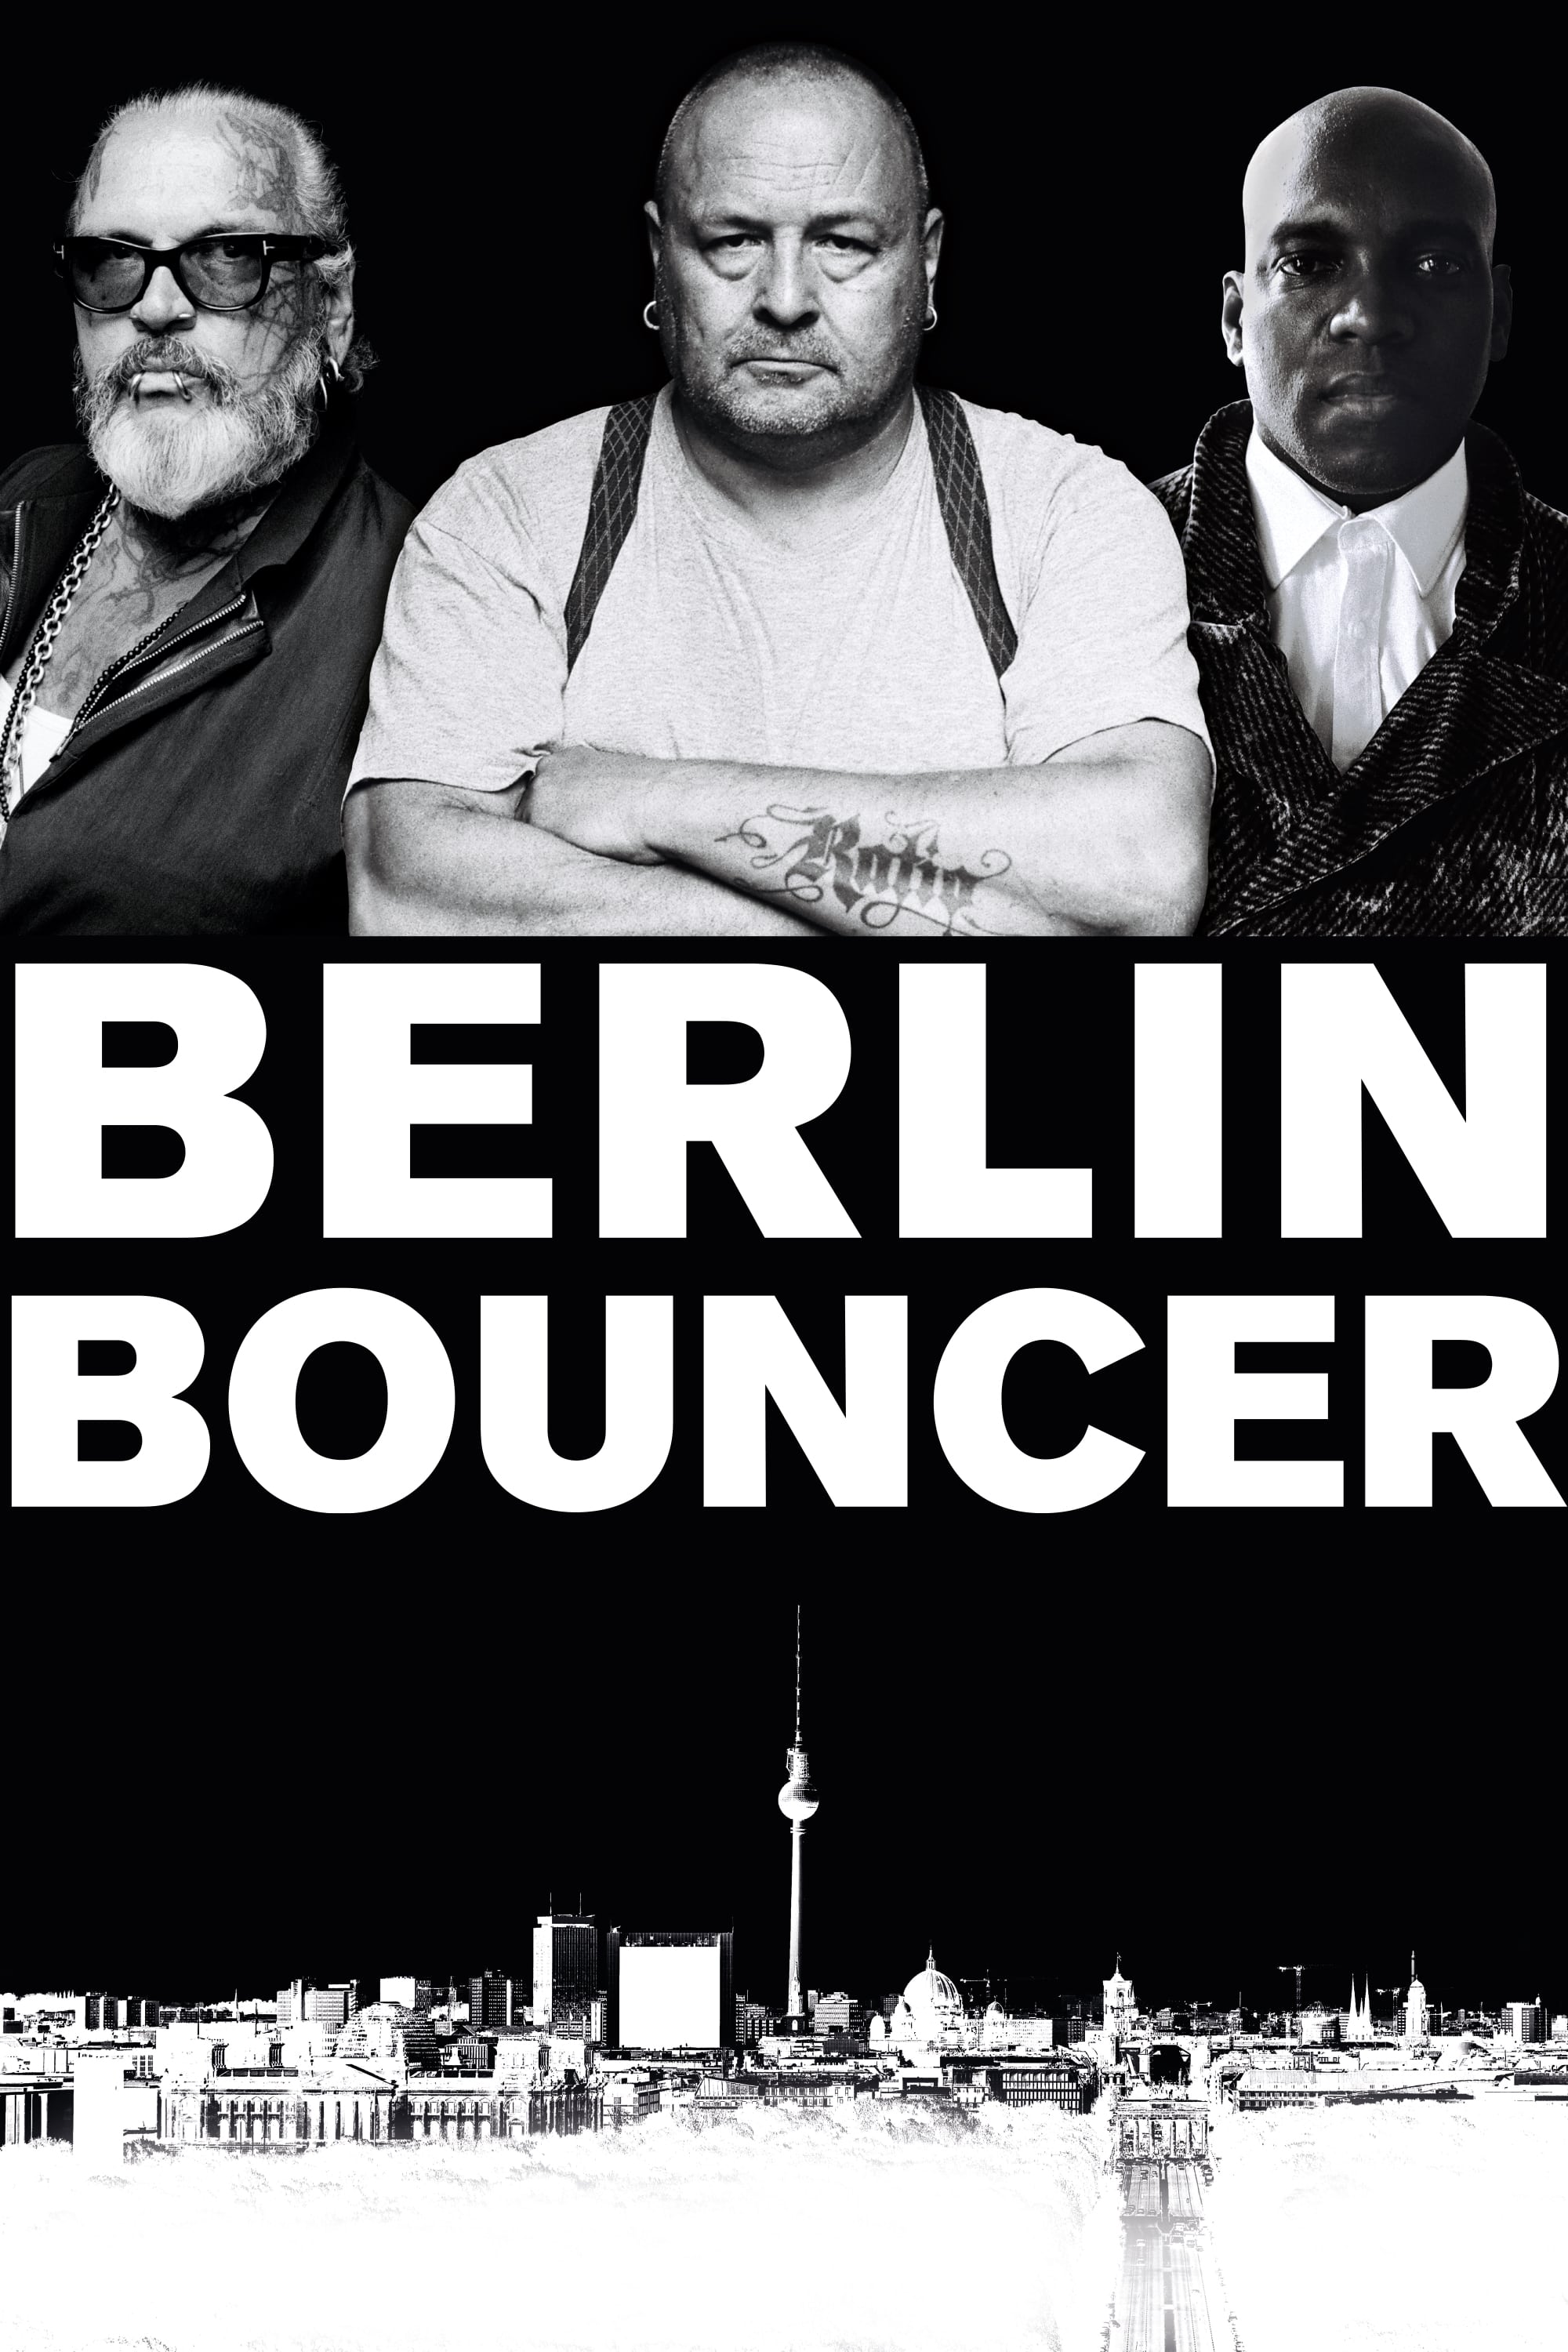 BERLIN BOUNCER